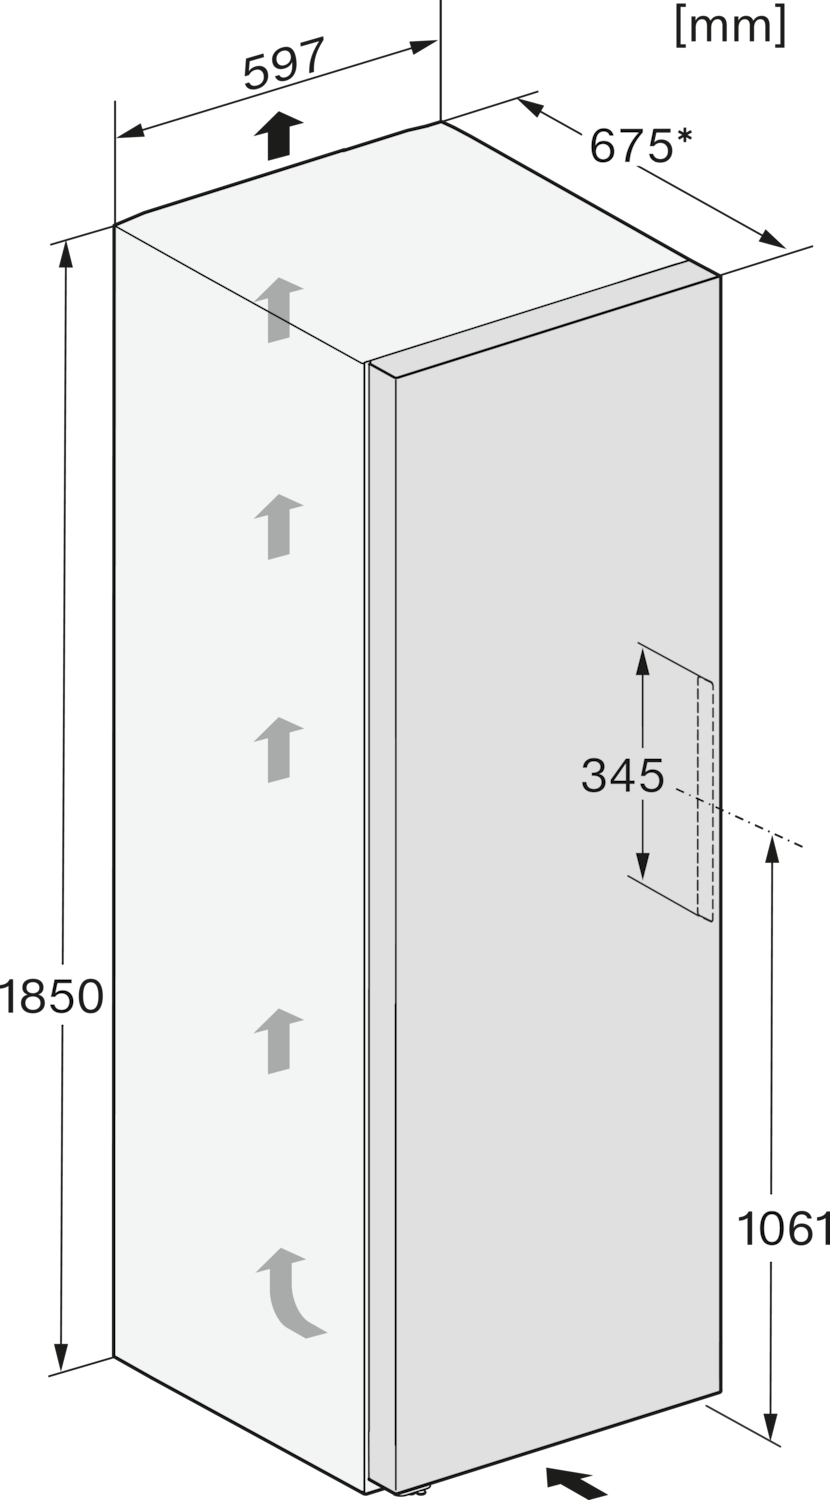 Hõbedane sügavkülmik NoFrost ja Side Open funktsioonidega, kõrgus 1.85m (FNS 4382 E) product photo View31 ZOOM